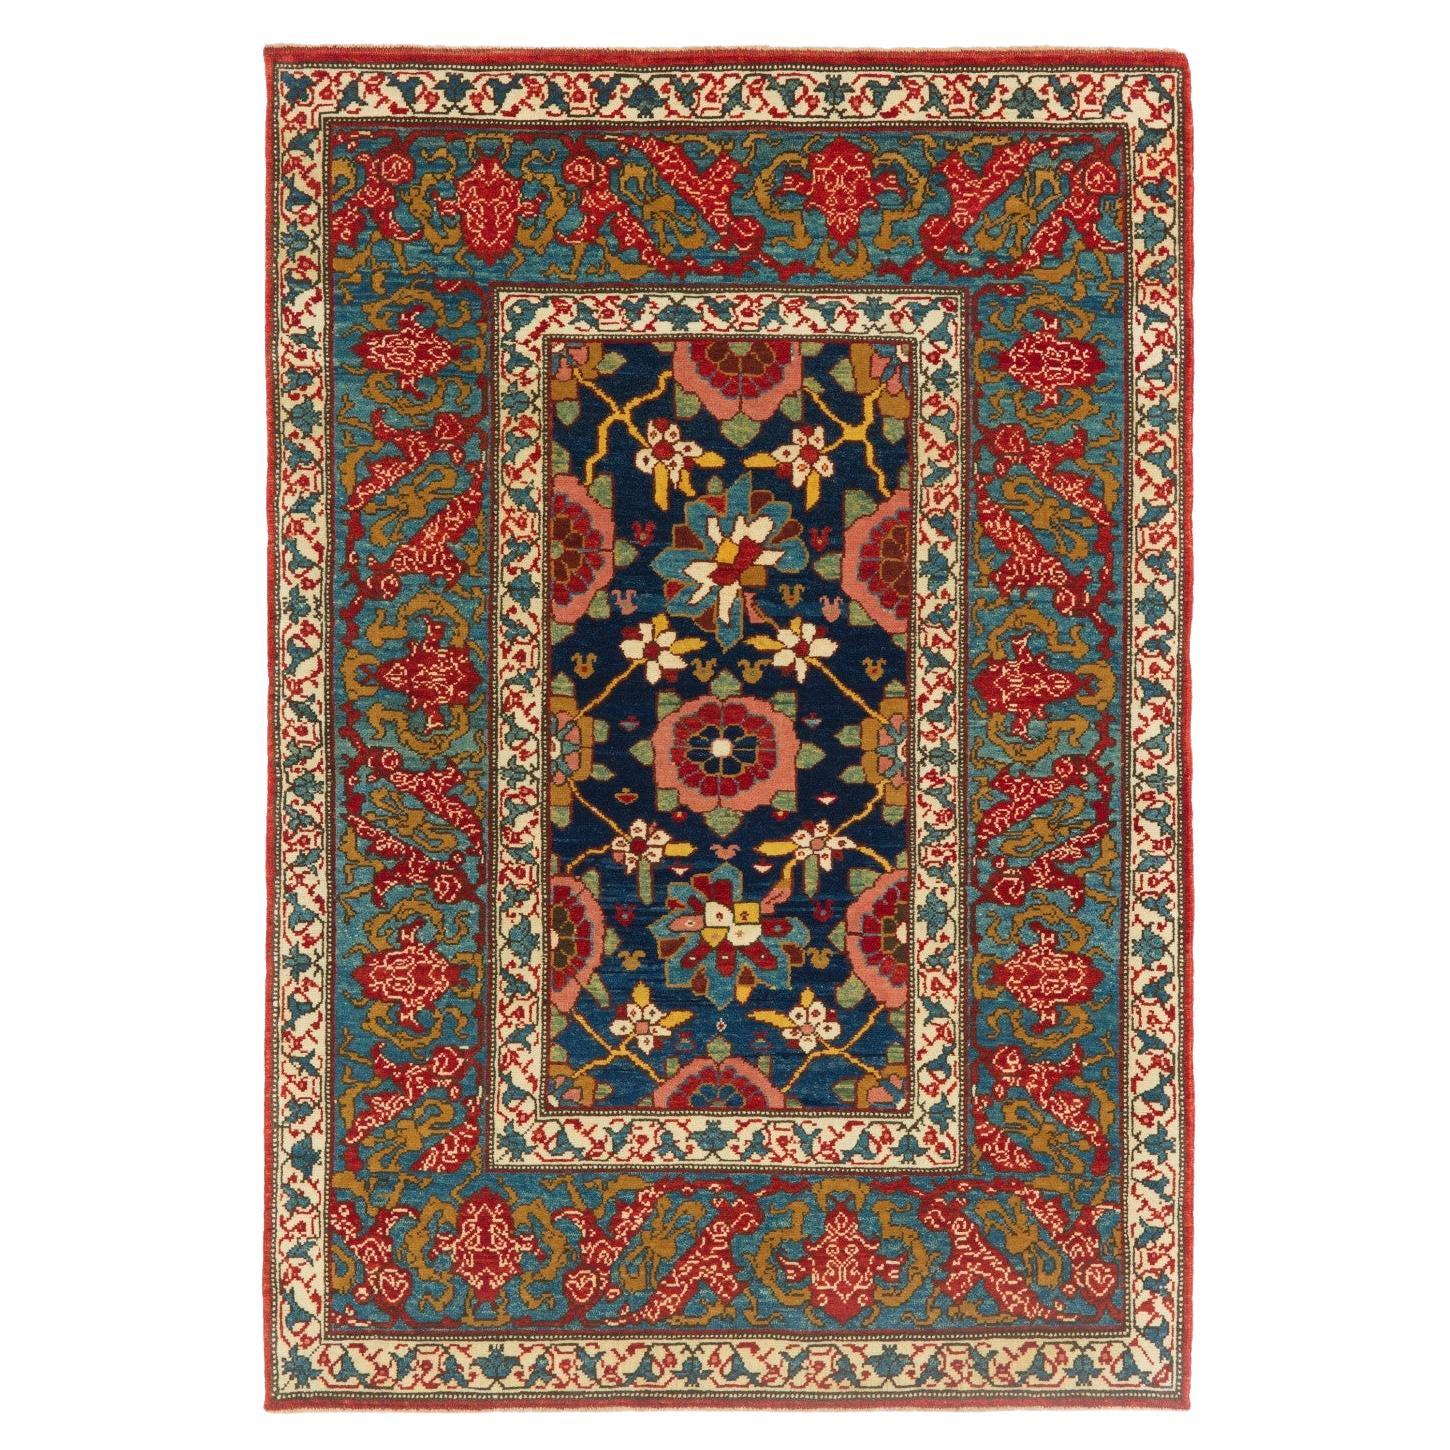 Ararat Rugs Mina Khani Rug with Bidjar Border Persian Revival Carpet Natural Dye For Sale